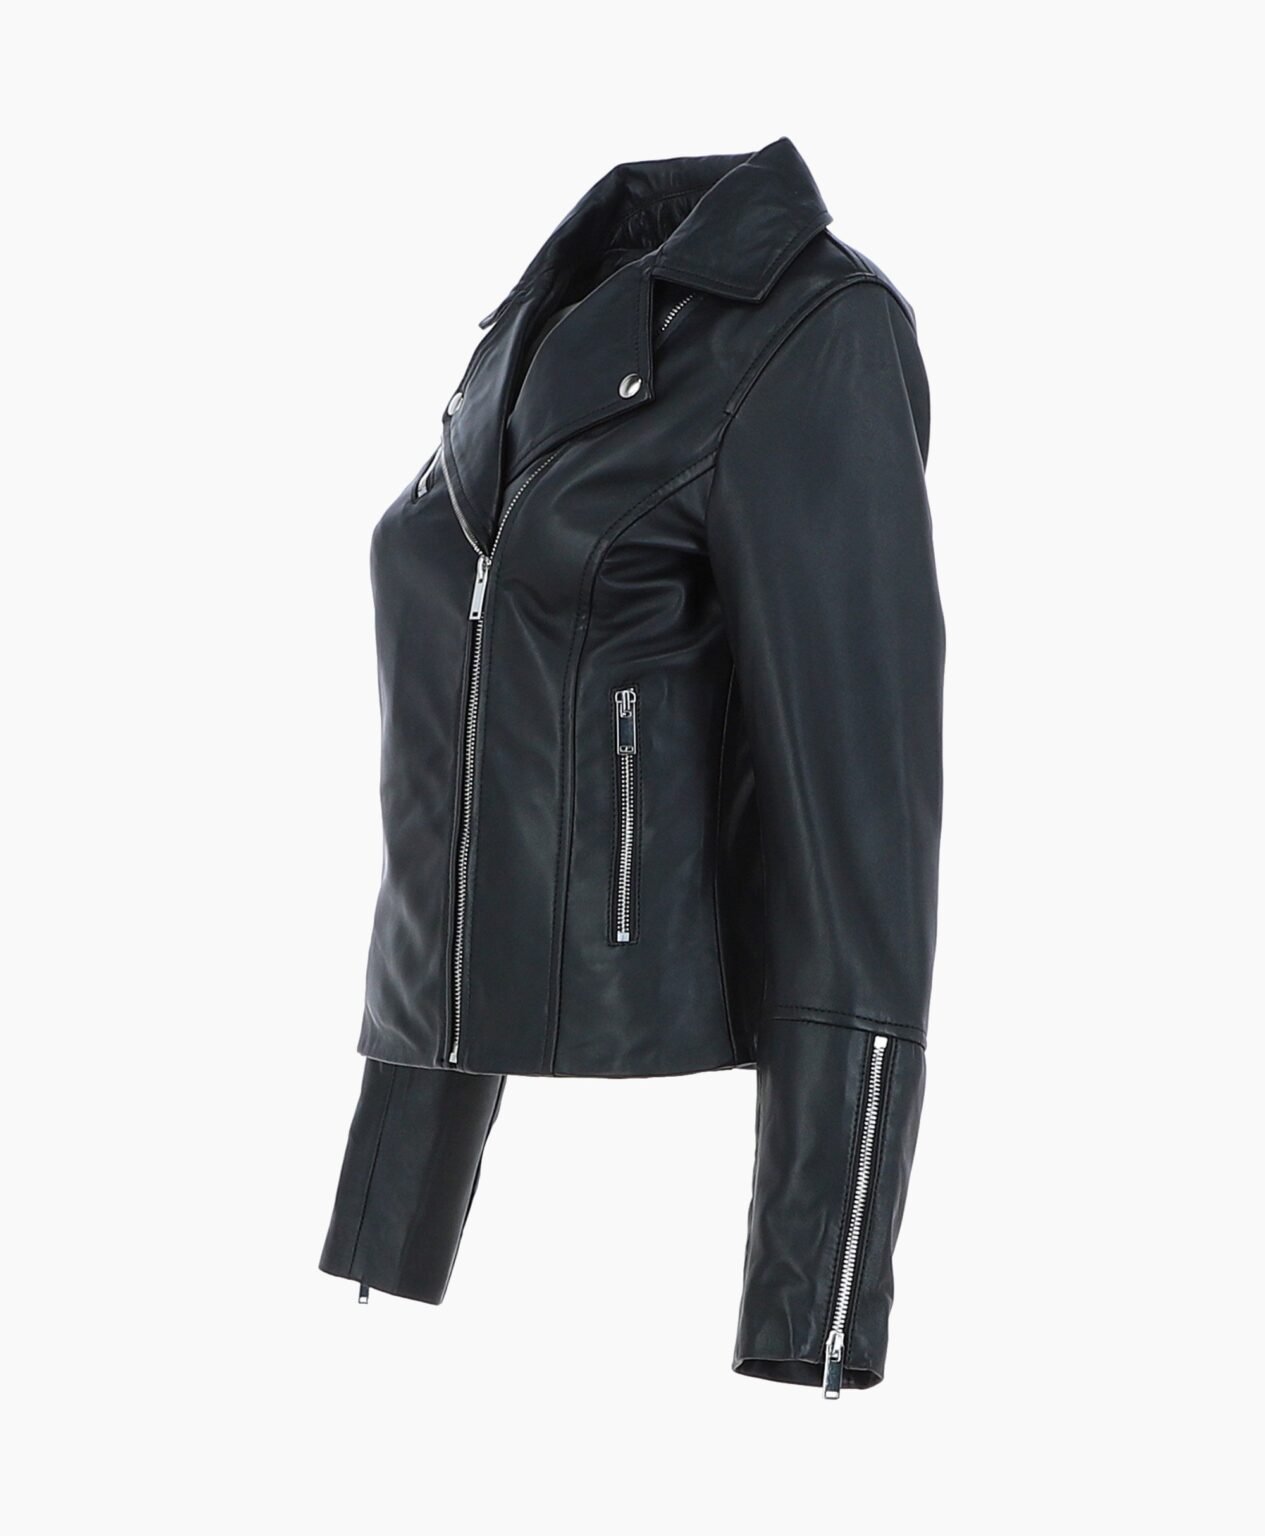 vogue-jacket-leather-biker-jacket-black-greeley-image201